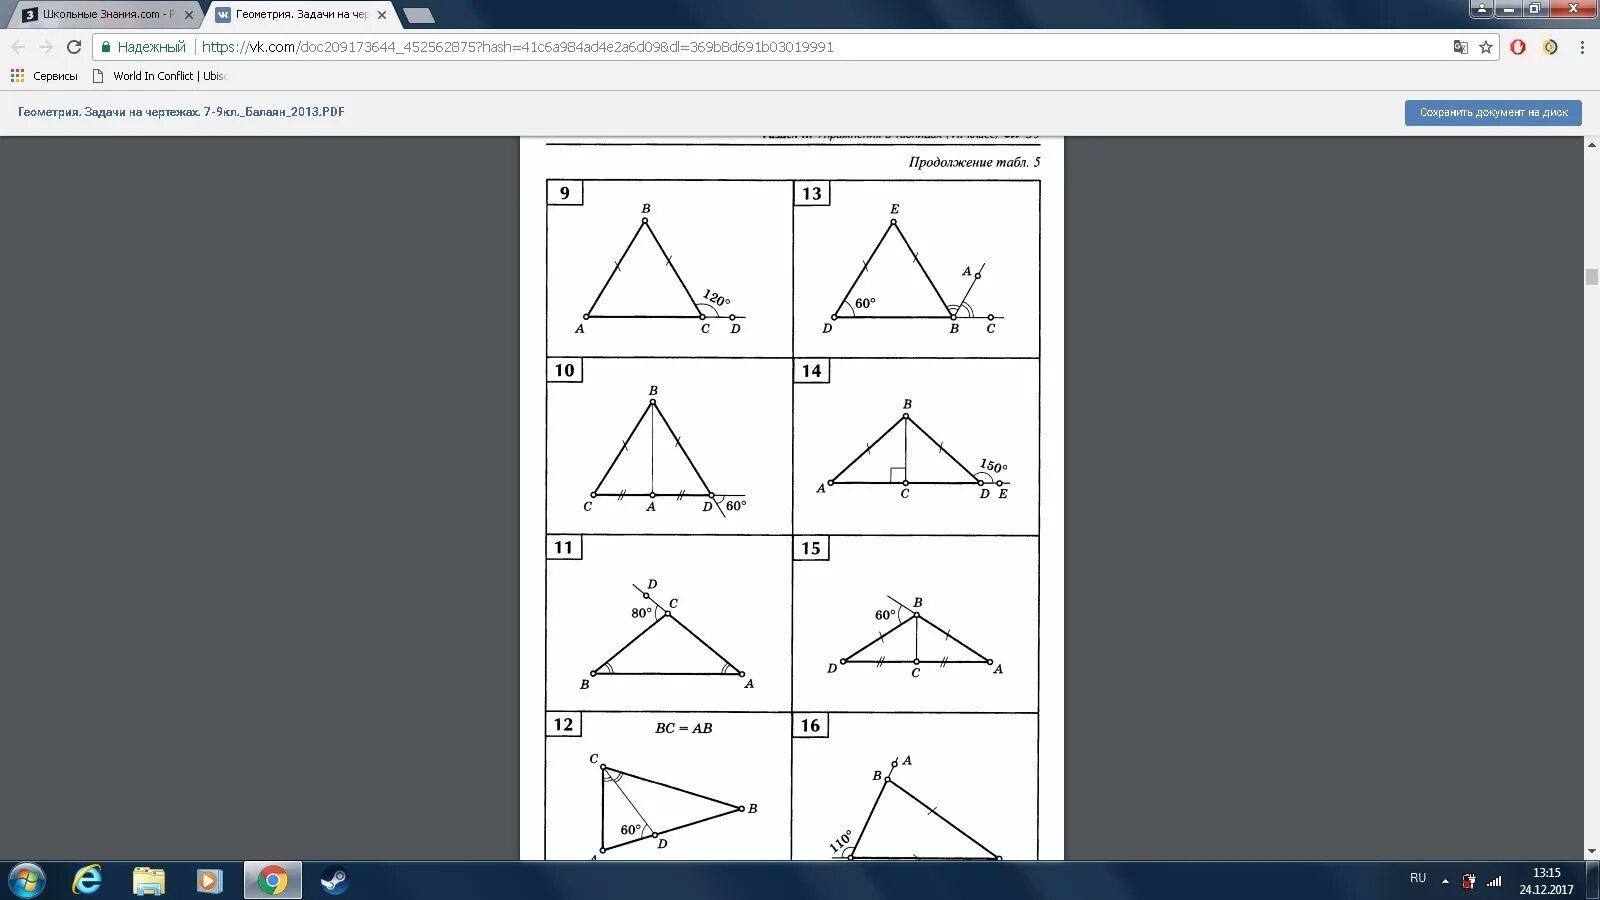 Равнобедренный треугольник найти угол CBA. Задача 14* геометрия. Найдите CBA 7 класс геометрия. Свойства равнобедренного треугольника Найдите угол CBA. Задачи на готовых чертежах балаян решения